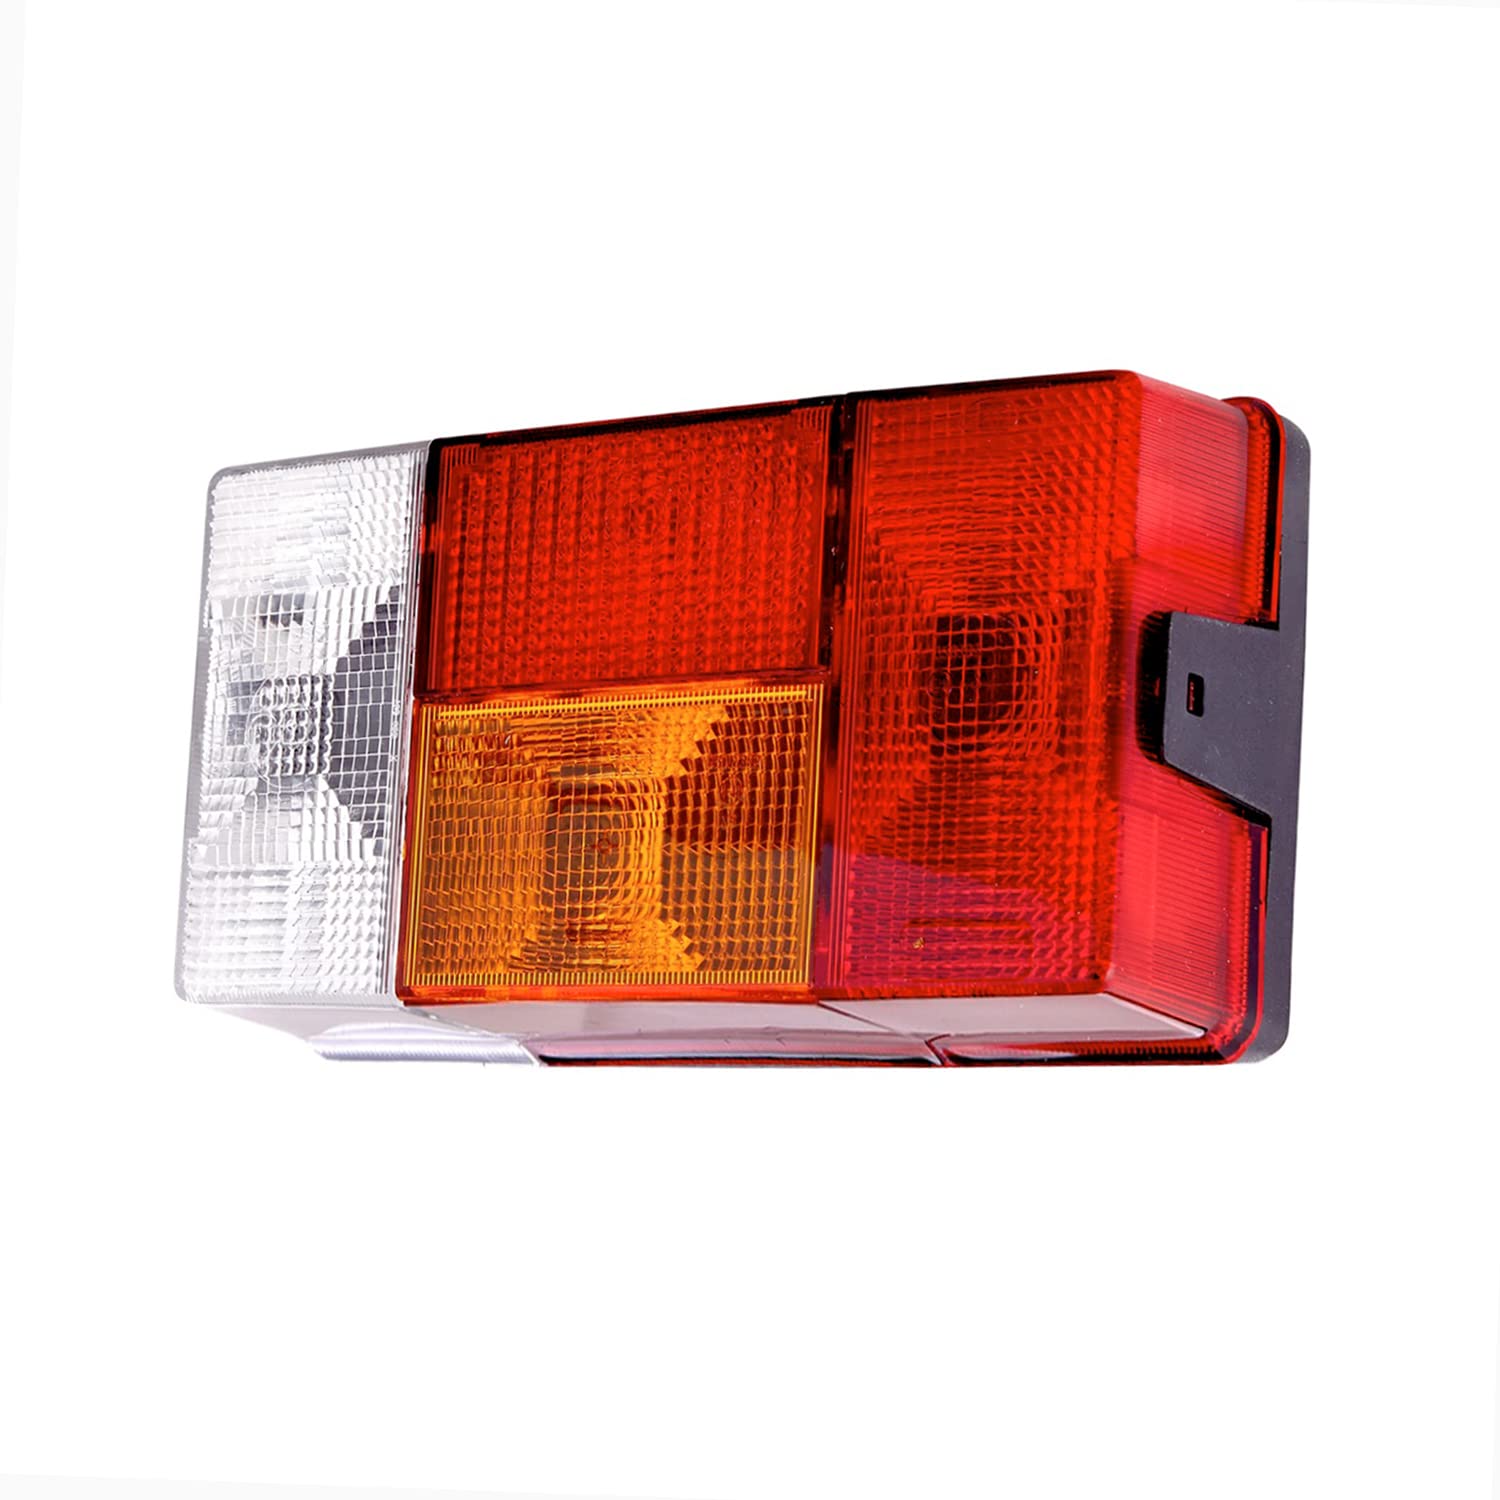 HELLA Rückleuchte - Glühlampe - Anhänger Beleuchtung - 24V / 12V - Anbau - ECE - Lichtscheibenfarbe: rot/gelb - Stecker: Flachstecker - rechts - Menge: 1 - 2VP 006 040-301 von Hella